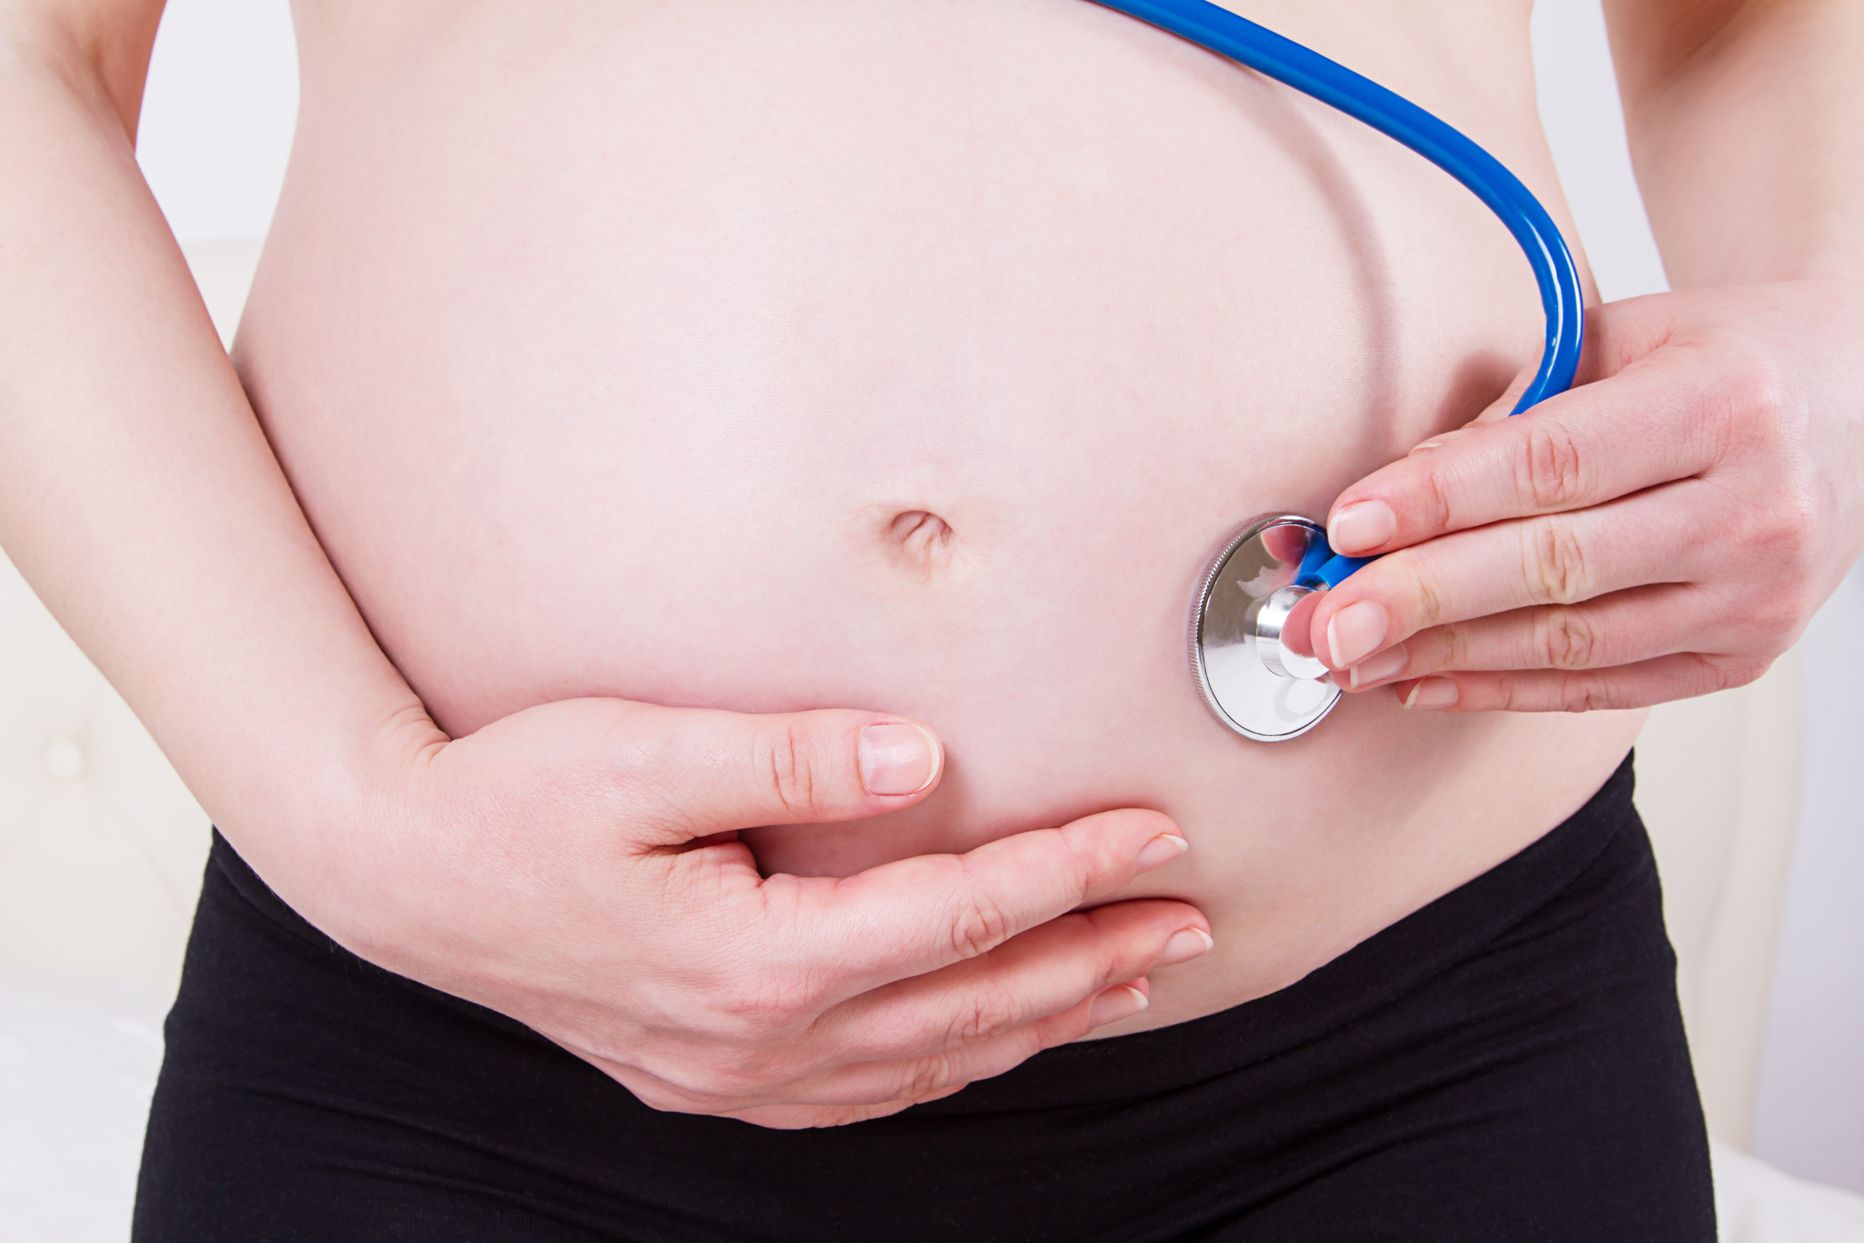 Vereproovipõhine ja äärmiselt täpne loote kromosoomanalüüs saamas uueks standardiks rasedate jälgimises.